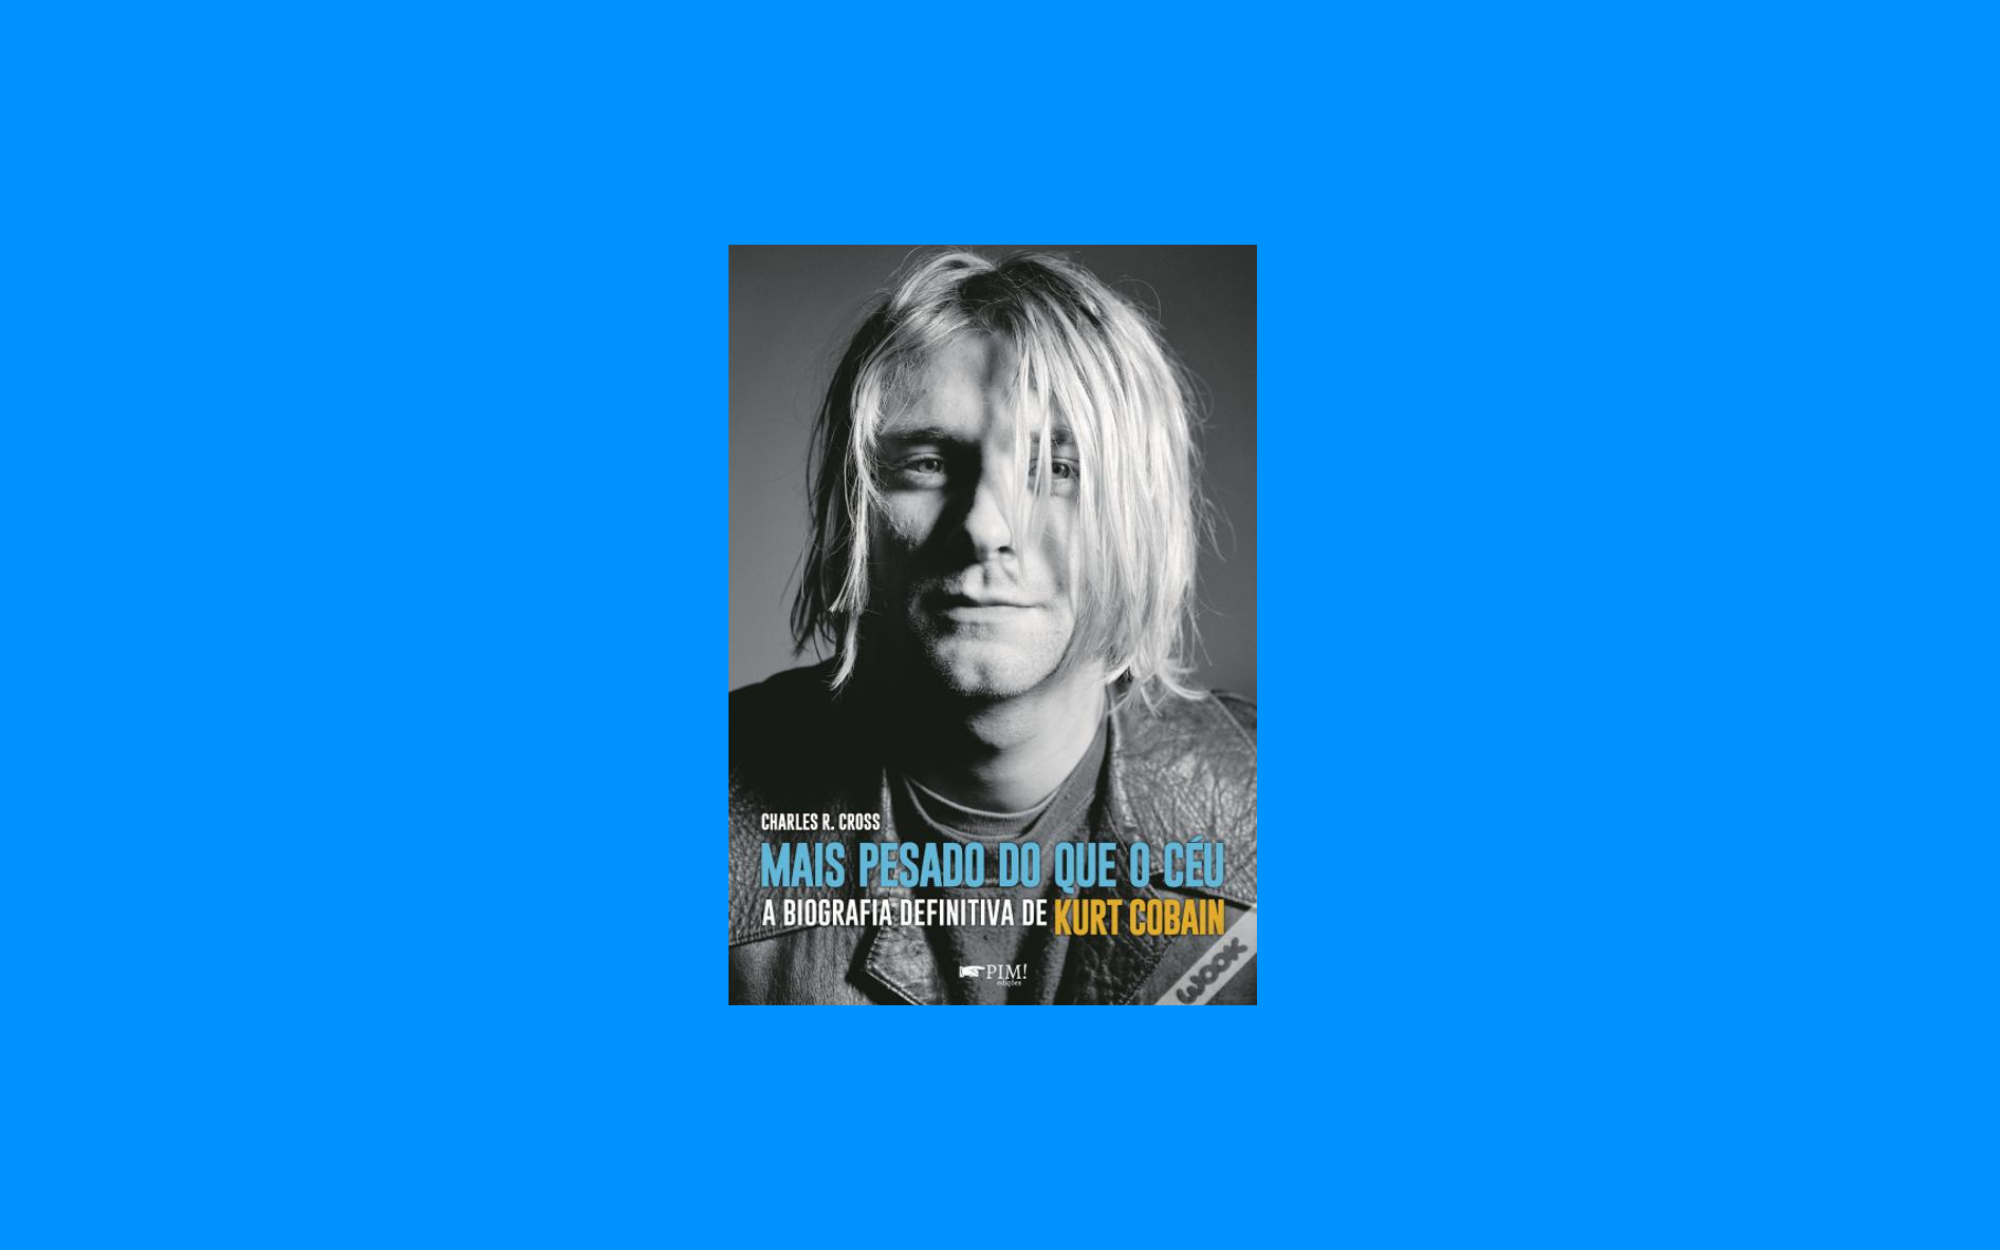 Capa da biografia de Kurt Cobain